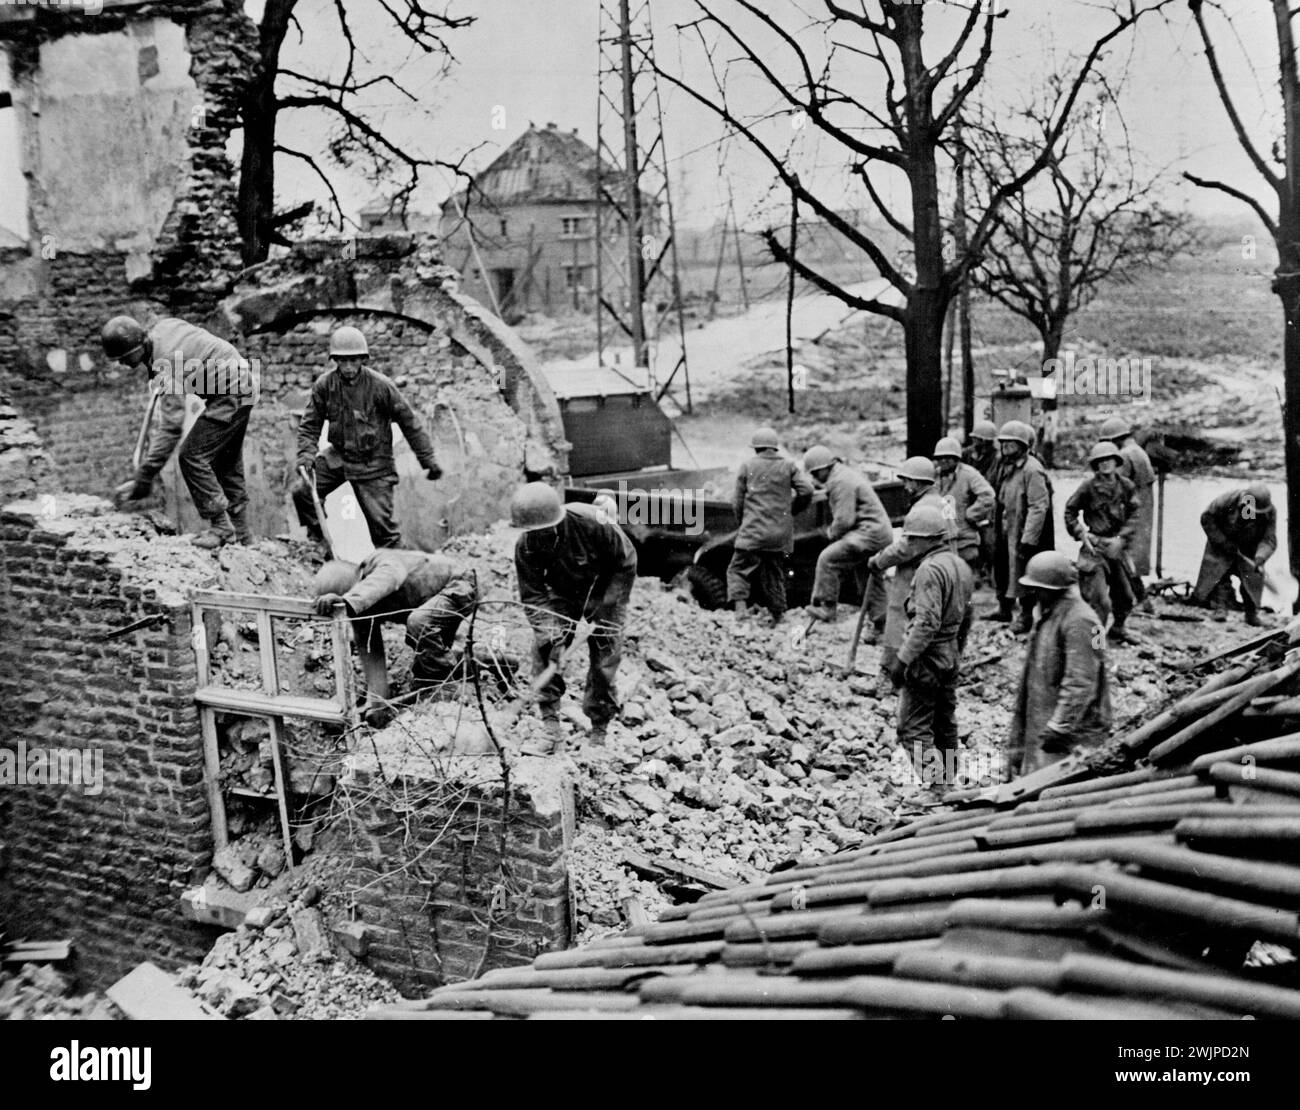 German Bricks Aid Allied Advance Inside Reich -- gli ingegneri del Nono Esercito degli Stati Uniti demoliscono un muro a Ubach, in Germania, e caricano i detriti sui camion, da utilizzare per riparare le strade per aiutare l'avanzata alleata all'interno del Reich, Stati Uniti 8 gennaio 1945. (Foto dell'Office of War Information Picture statunitense). Foto Stock